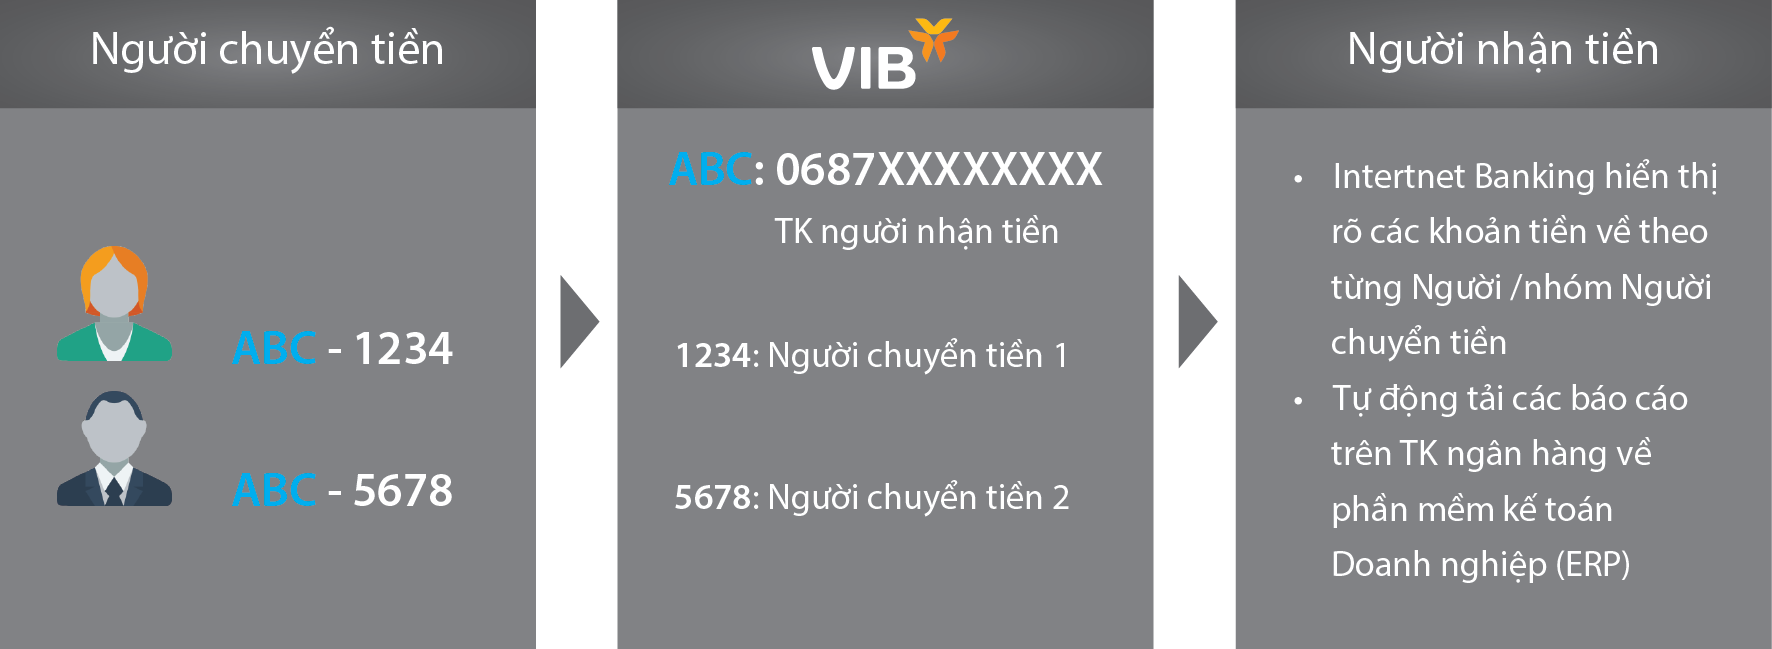 VIB cung cấp giải pháp Công nghệ số Virtual Account cho Khách hàng Doanh nghiệp